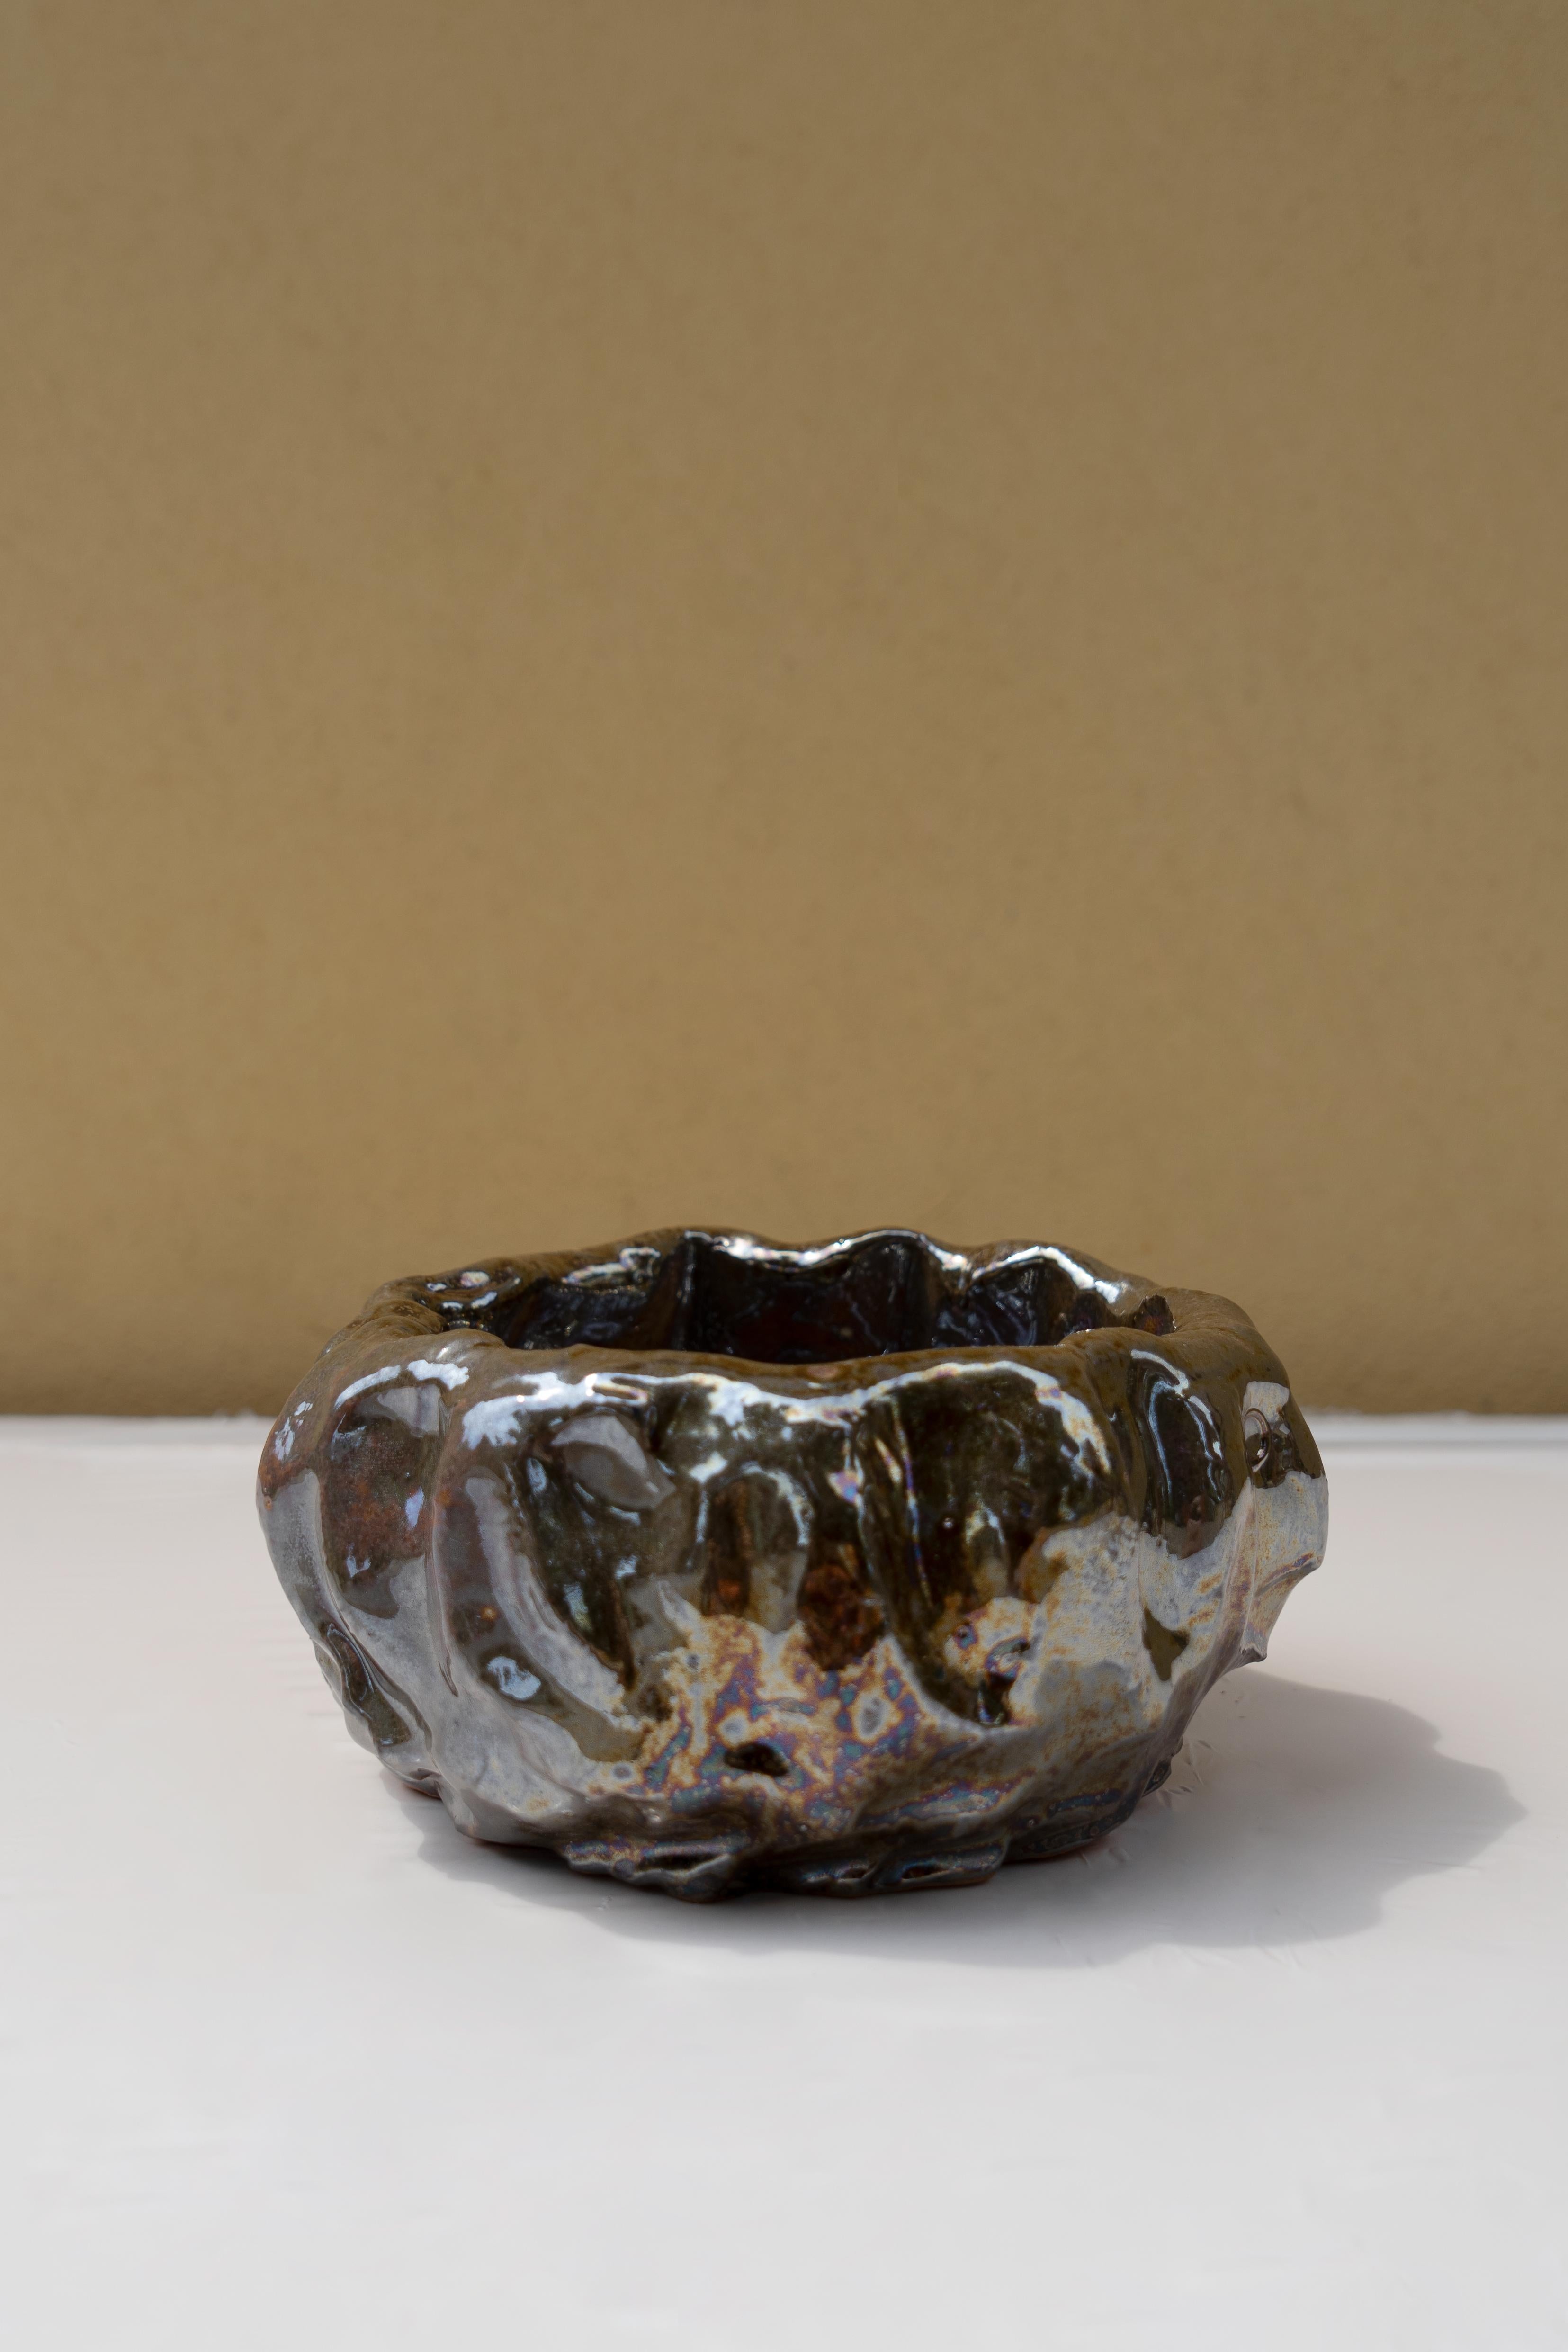 Vase en bronze de Daniele Giannetti
Dimensions : Ø 20 x H 10 cm.
Matériaux : terre cuite émaillée. 

Toutes les pièces sont réalisées en terre cuite de Montelupo, cuites une seule fois, puis colorées par Daniele Giannetti avec une base acrylique